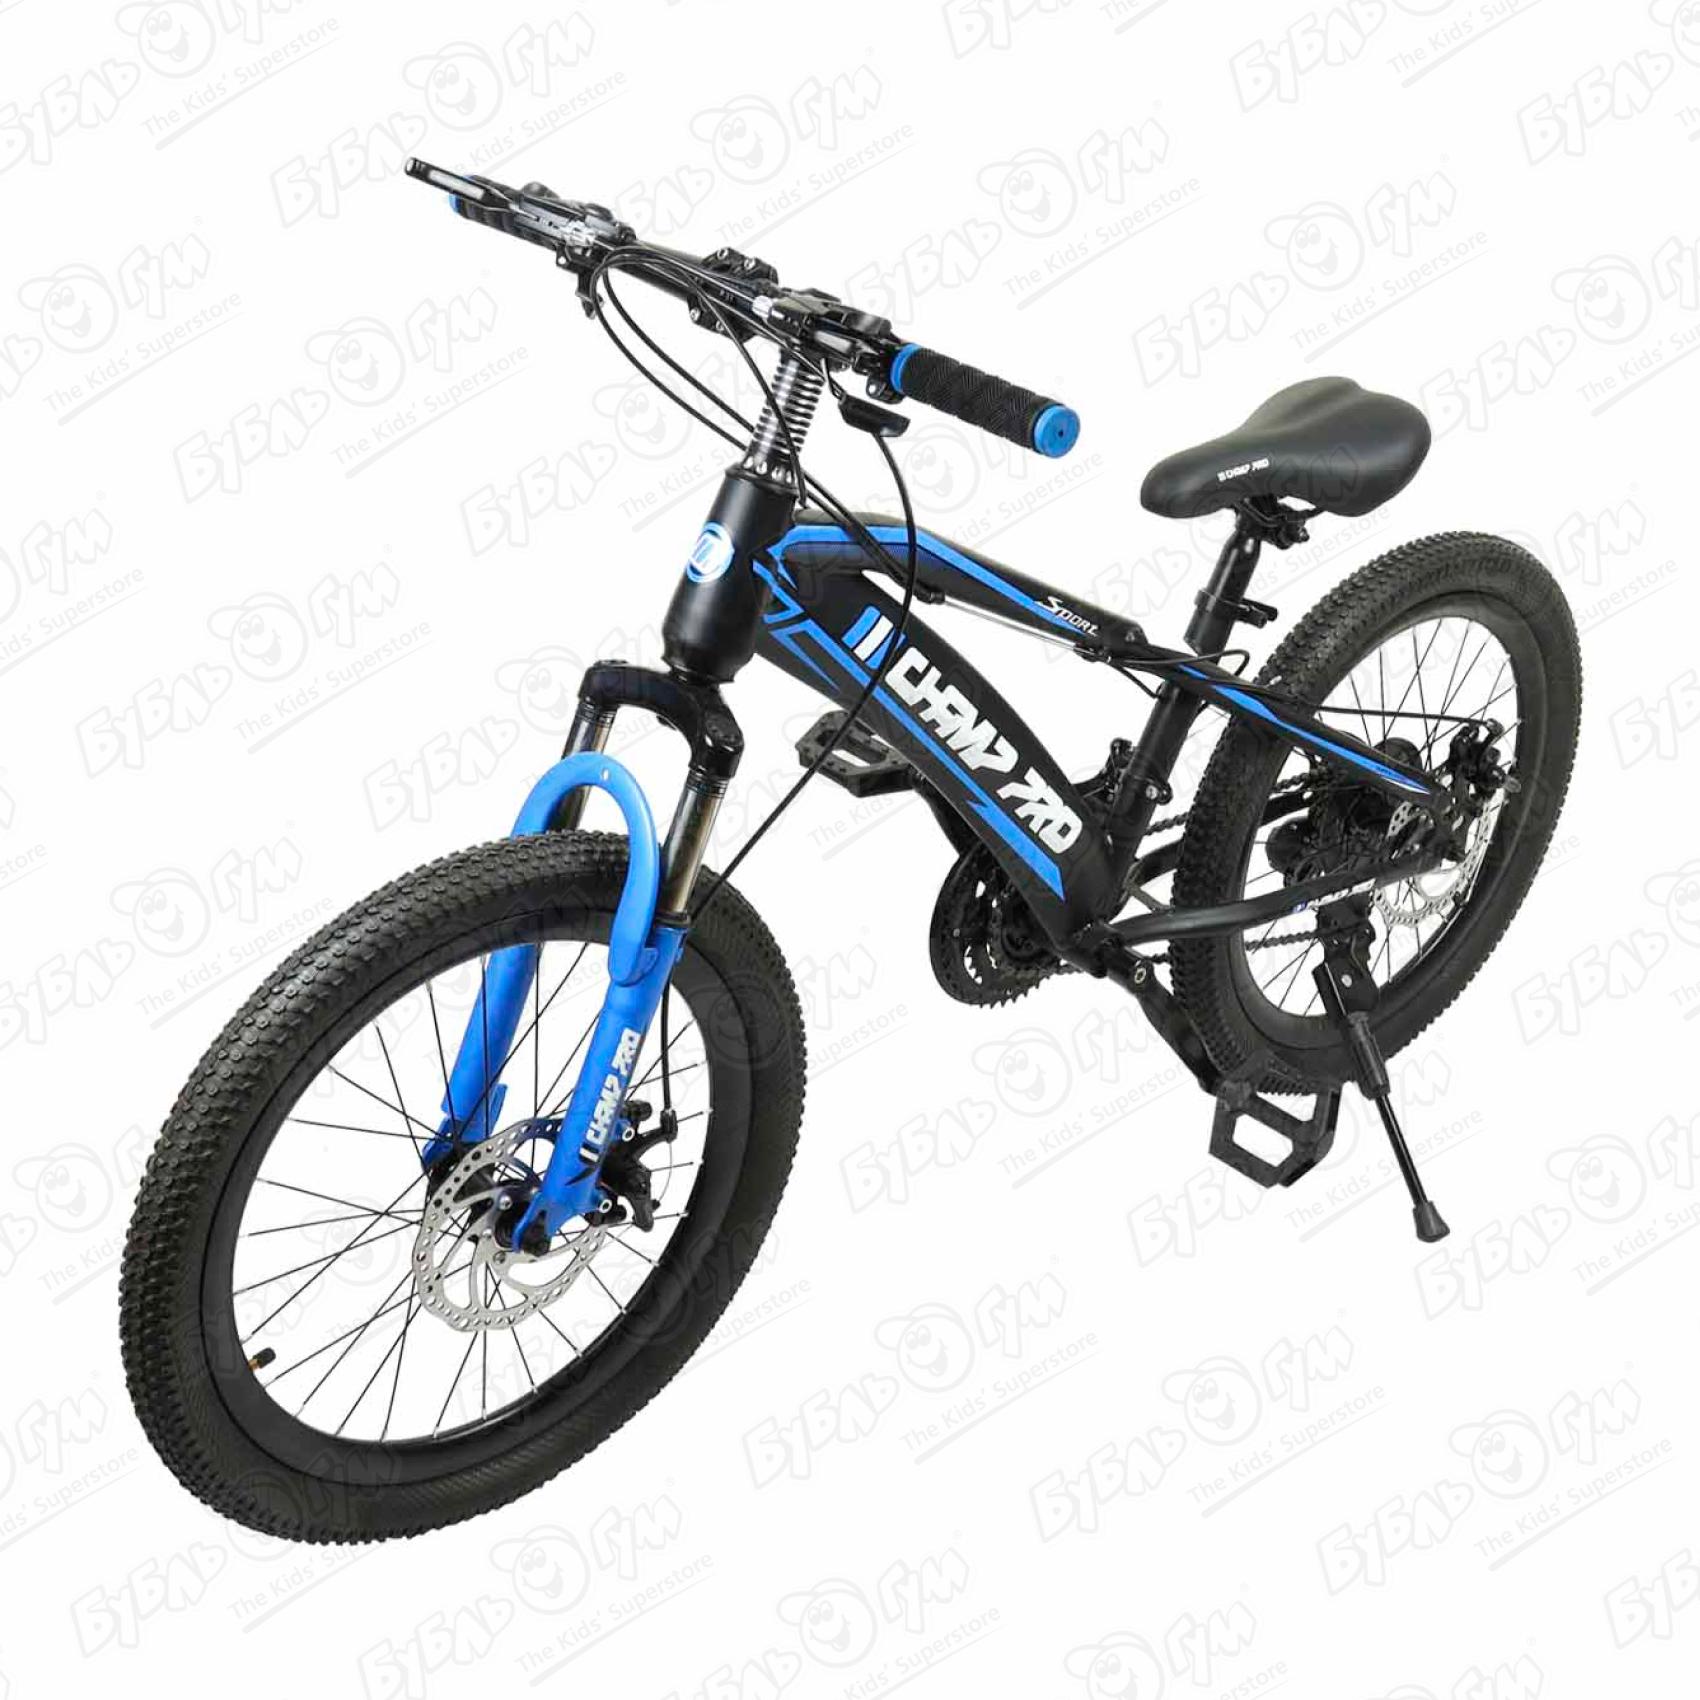 Велосипед Champ Pro горный 21скорость B20 16кг черно-синий горный велосипед forward flash 26 1 0 год 2021 синий зеленый ростовка 17